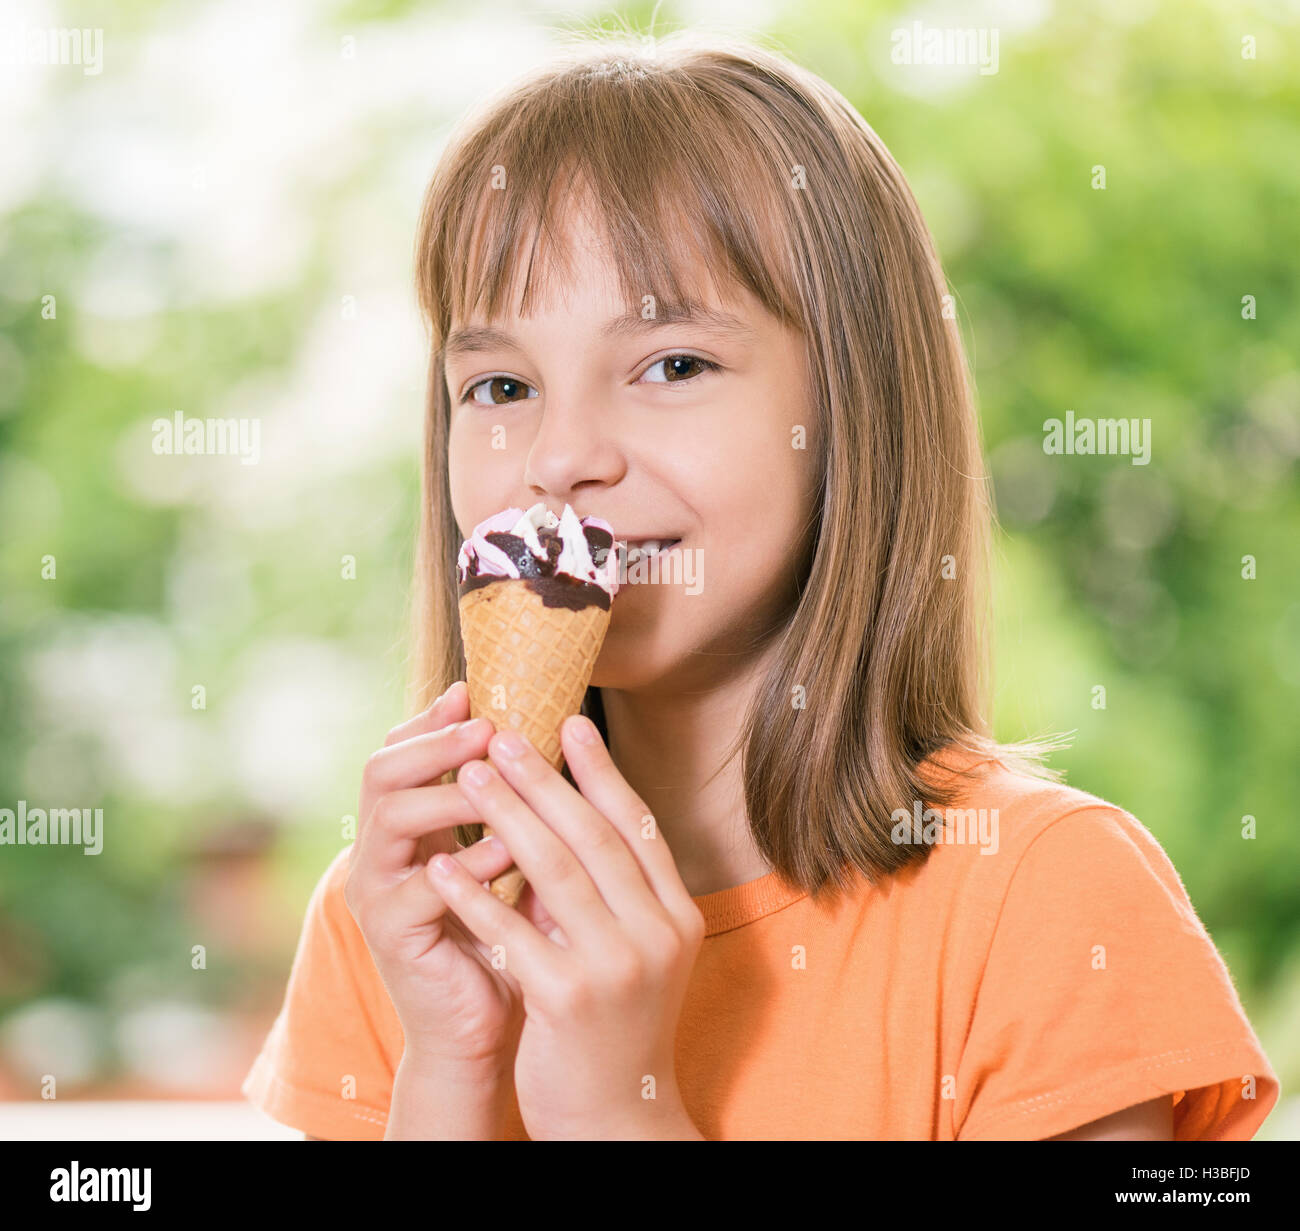 Girl with ice cream Stock Photo